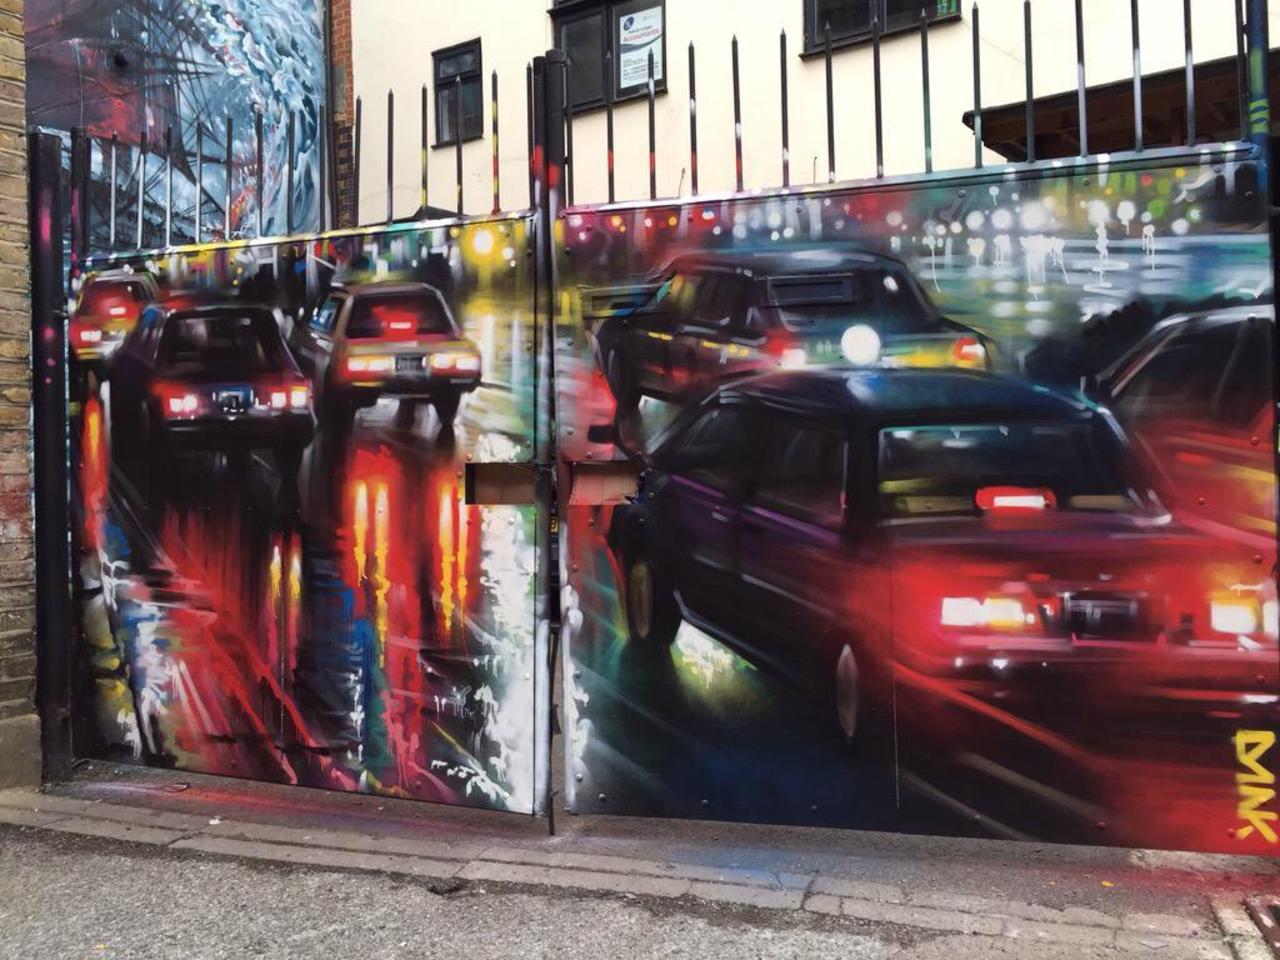 New Street Art by DanKitchener in Brick Lane London 

#art #graffiti #mural #streetart http://t.co/Tjgxkd22QJ